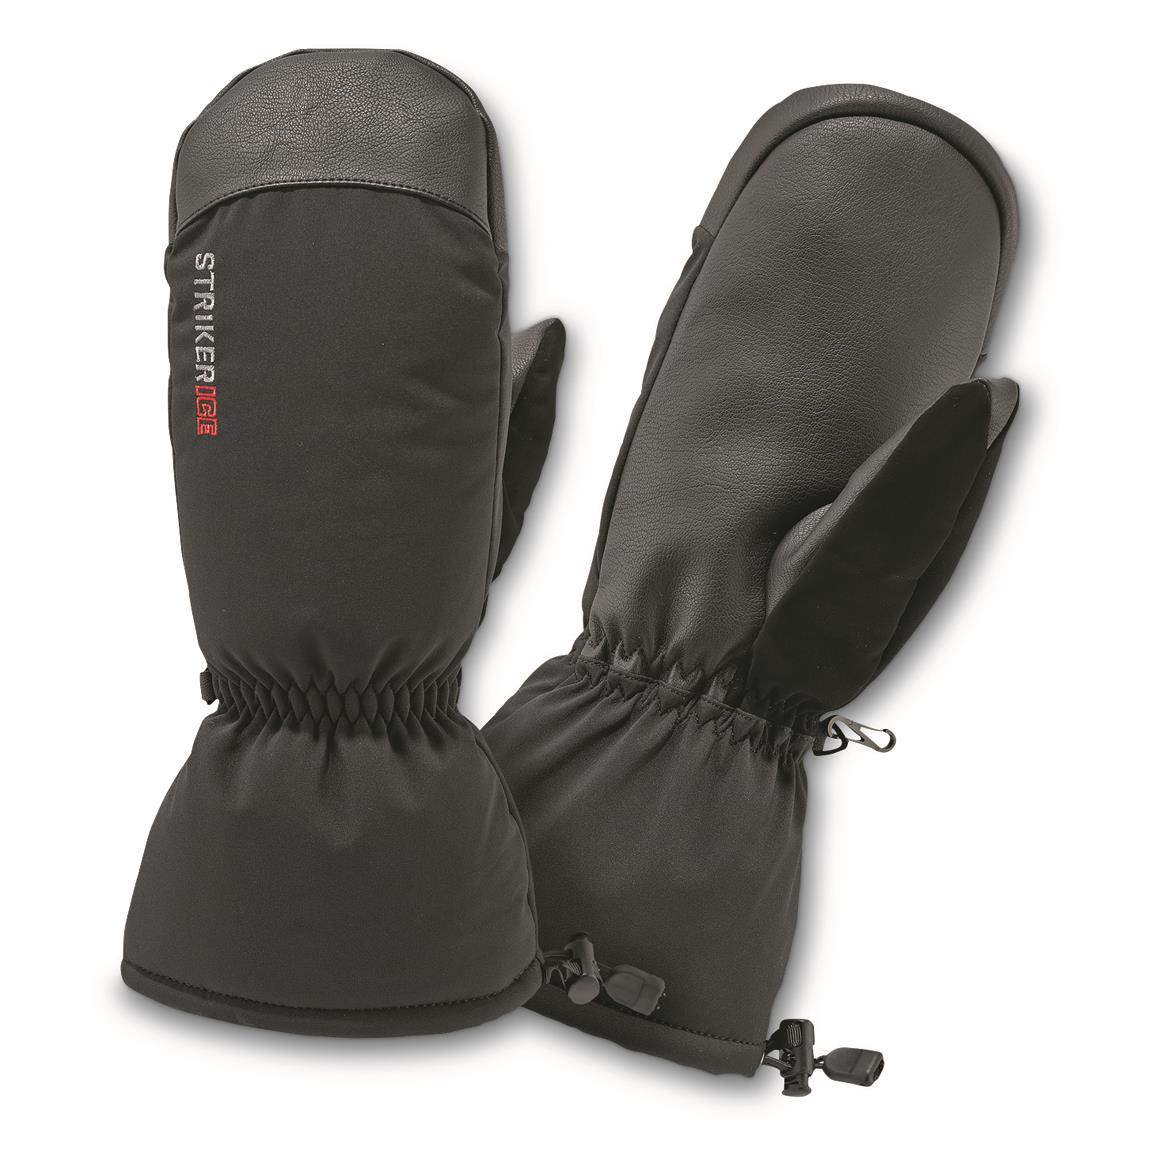 StrikerICE Tundra Waterproof Insulated Mittens, Black